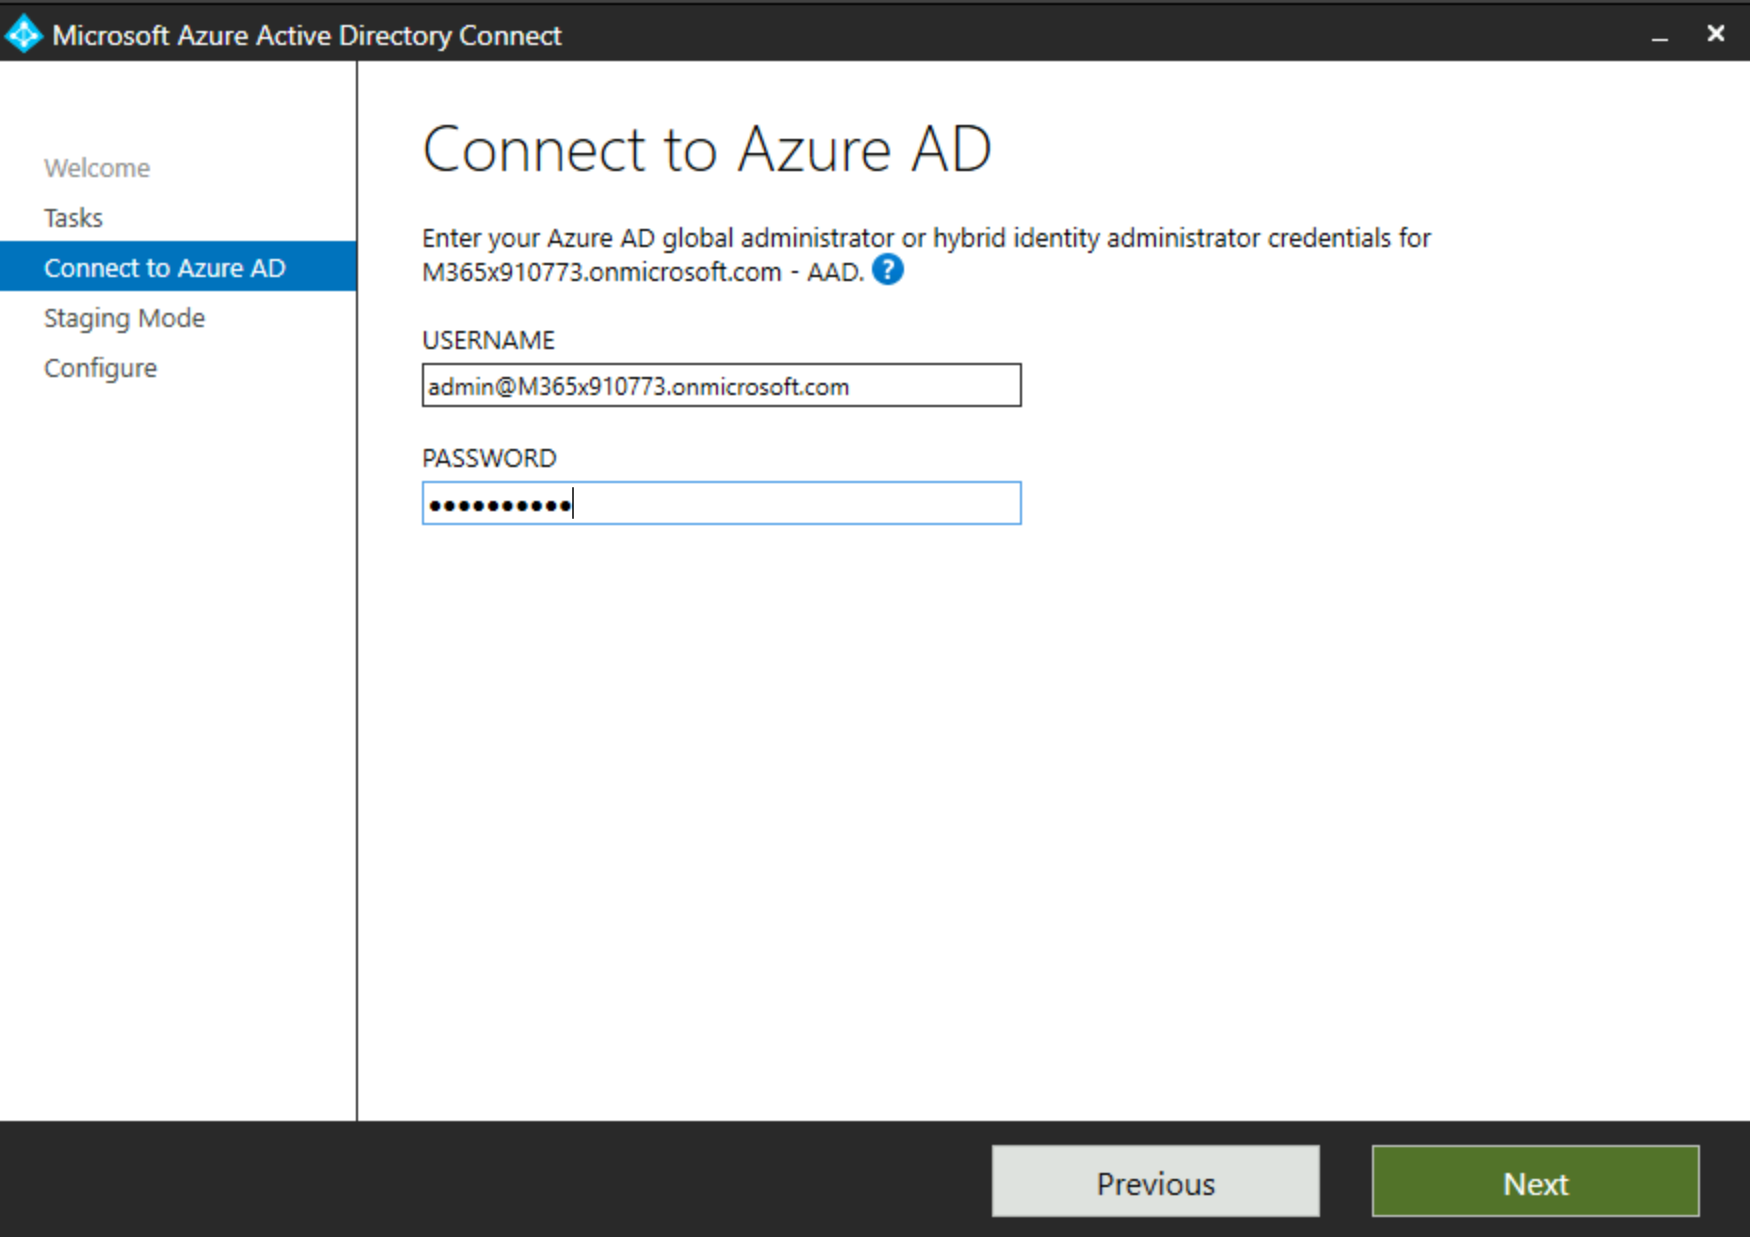 Etkin Microsoft Entra Bağlan iletişim kutusunda Oturum açma istemini gösteren ekran görüntüsü.